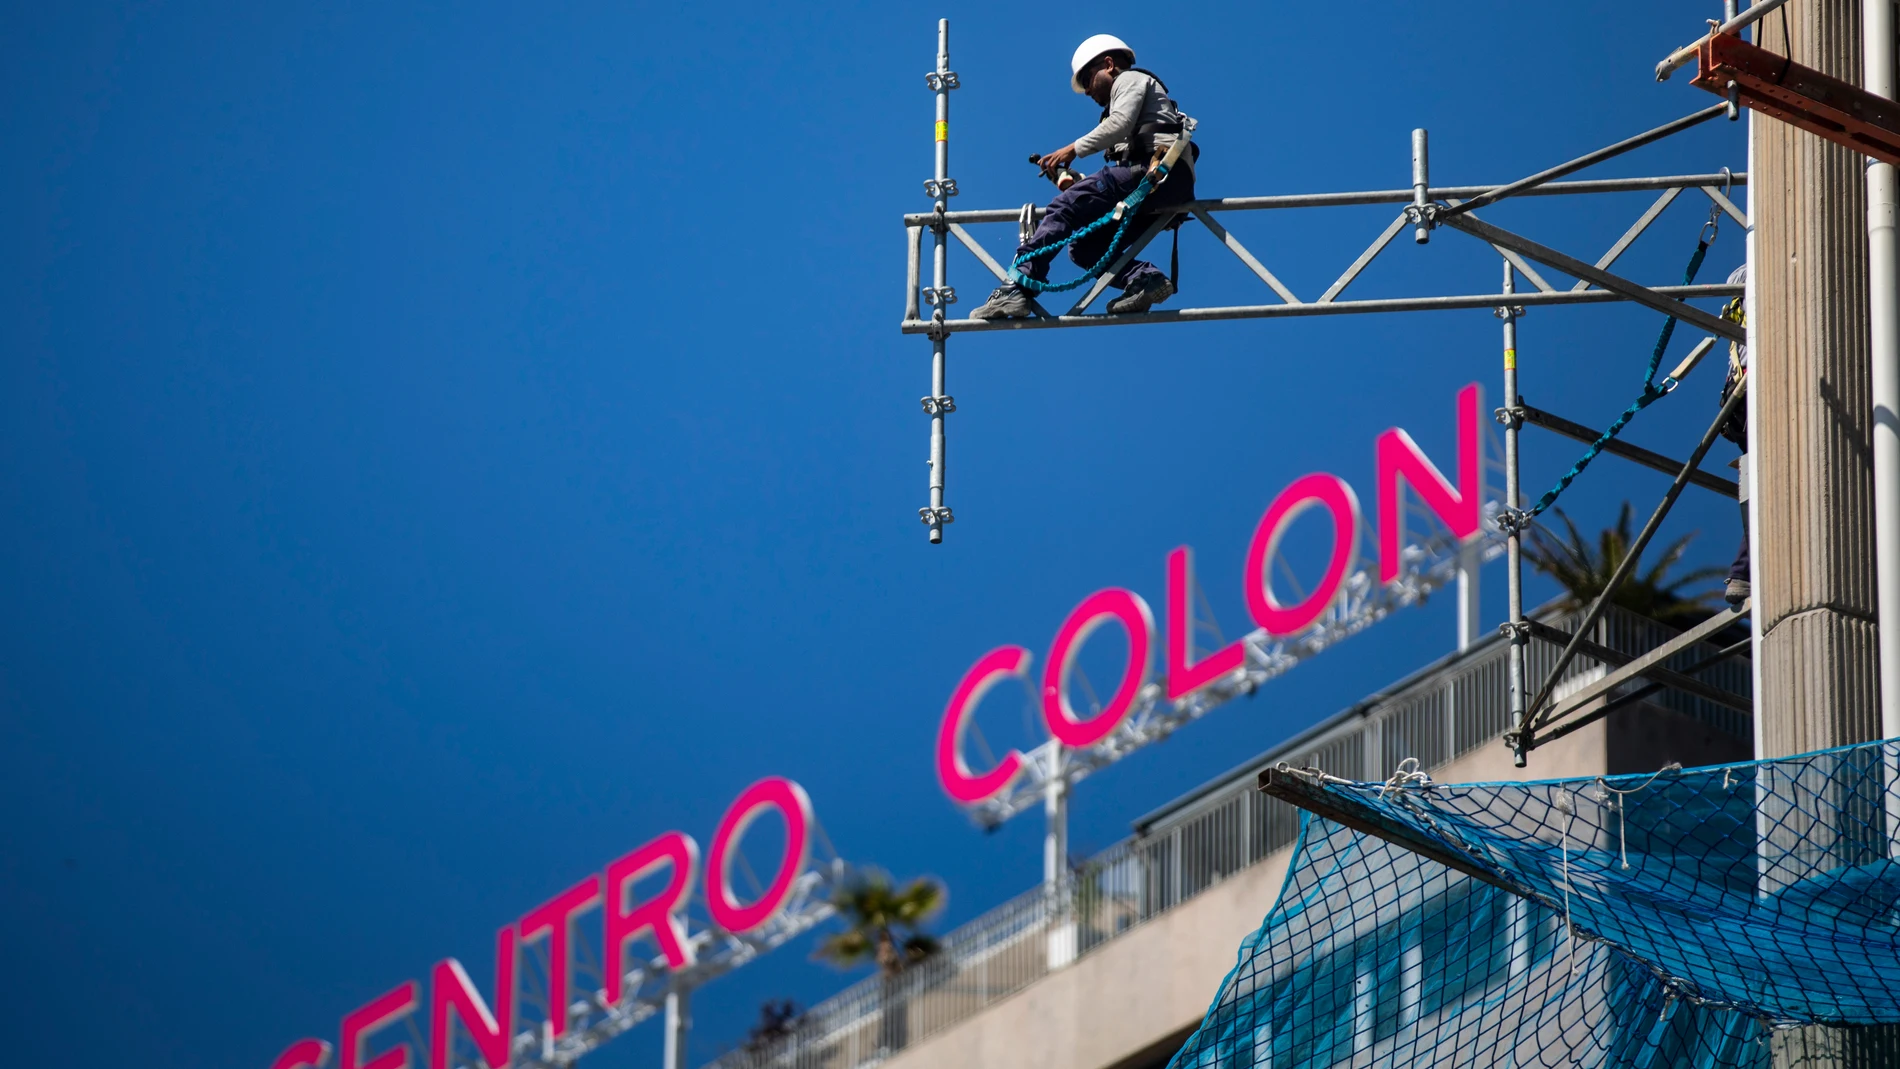 Imagen de unos operarios desmontando andamios en las Torres de Colón con la letras del edificio Centro Colon a la espalda